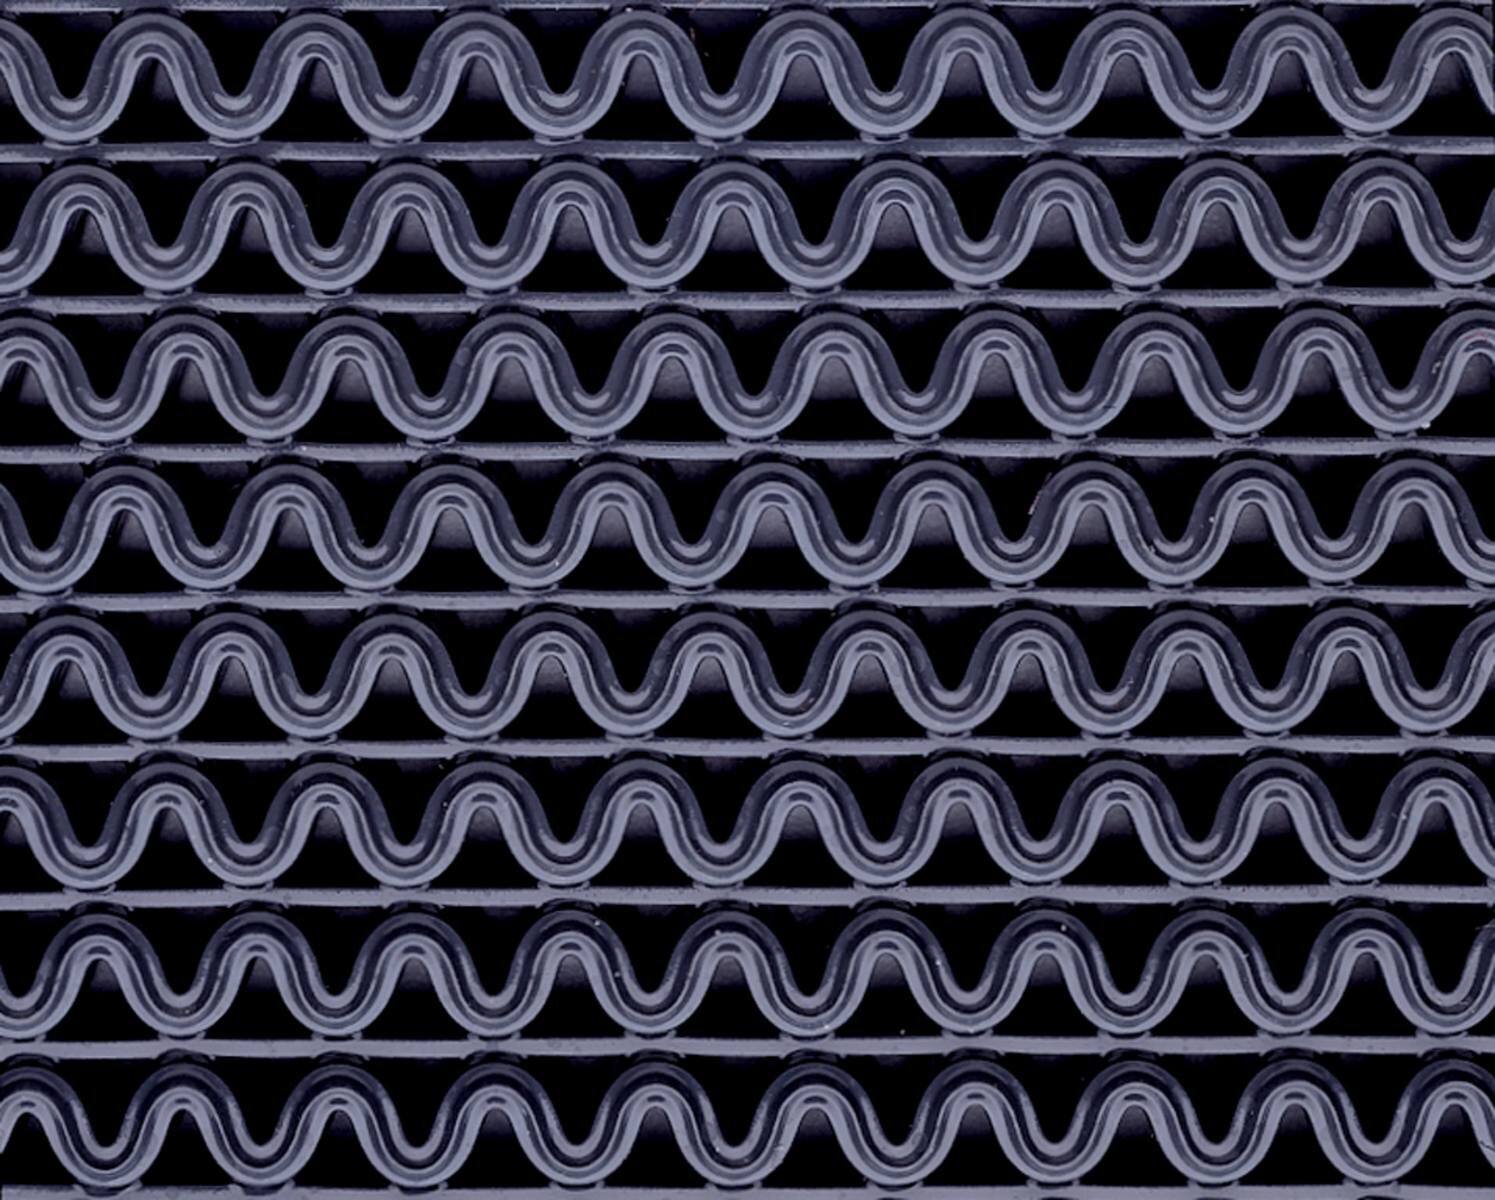 tappeto antipolvere 3M Nomad Terra 9100, grigio, 1,5m x 0,9m